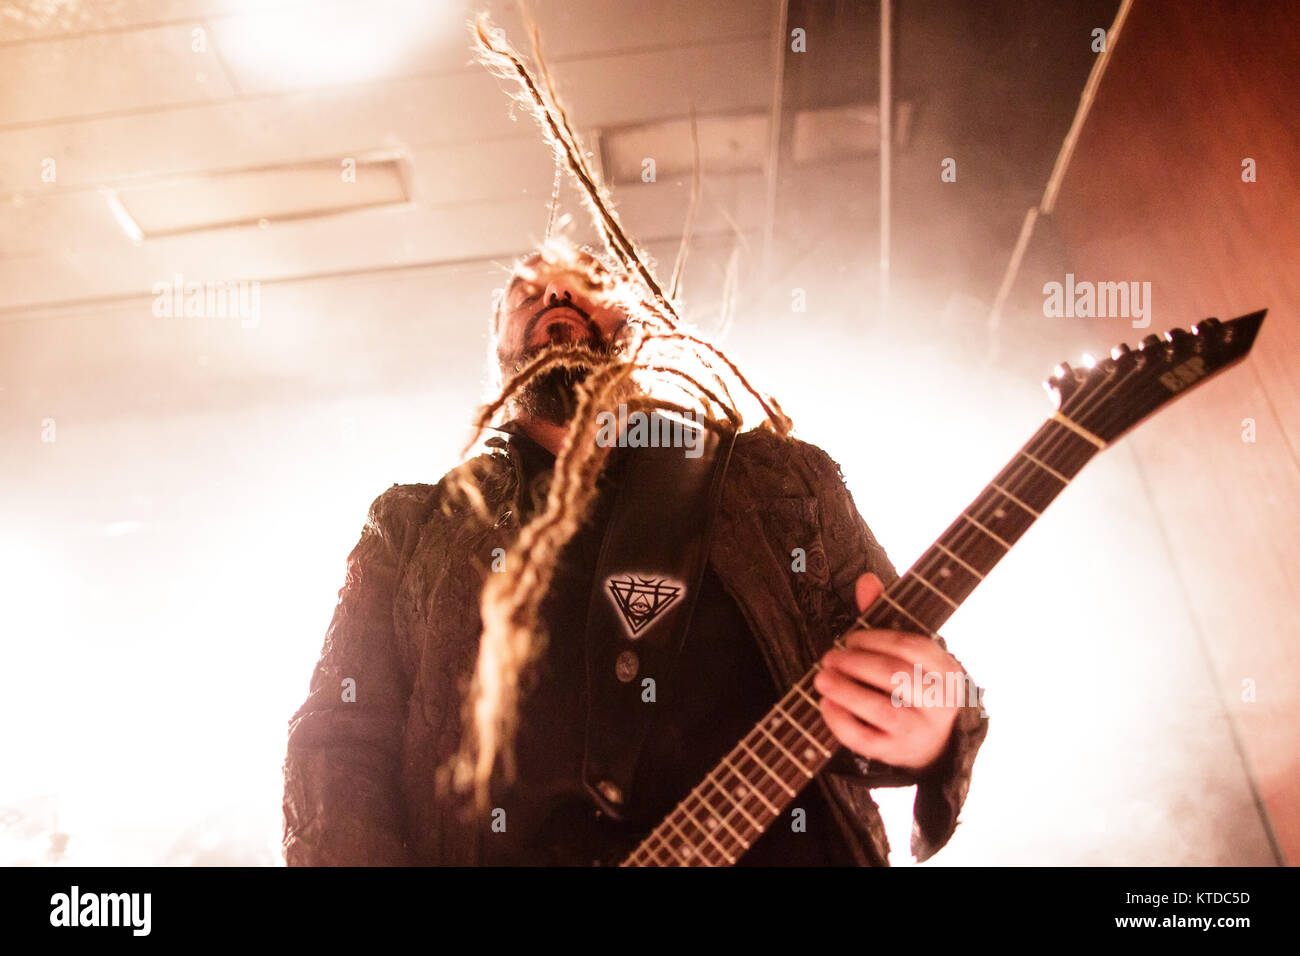 Le groupe de metal symphonique grec Septicflesh (anciennement connu sous le nom de Septic Flesh) effectue un concert live à Vega à Copenhague. Ici guitariste Christos Antoniou est vu sur scène. Le Danemark, 11/01 2016. Banque D'Images